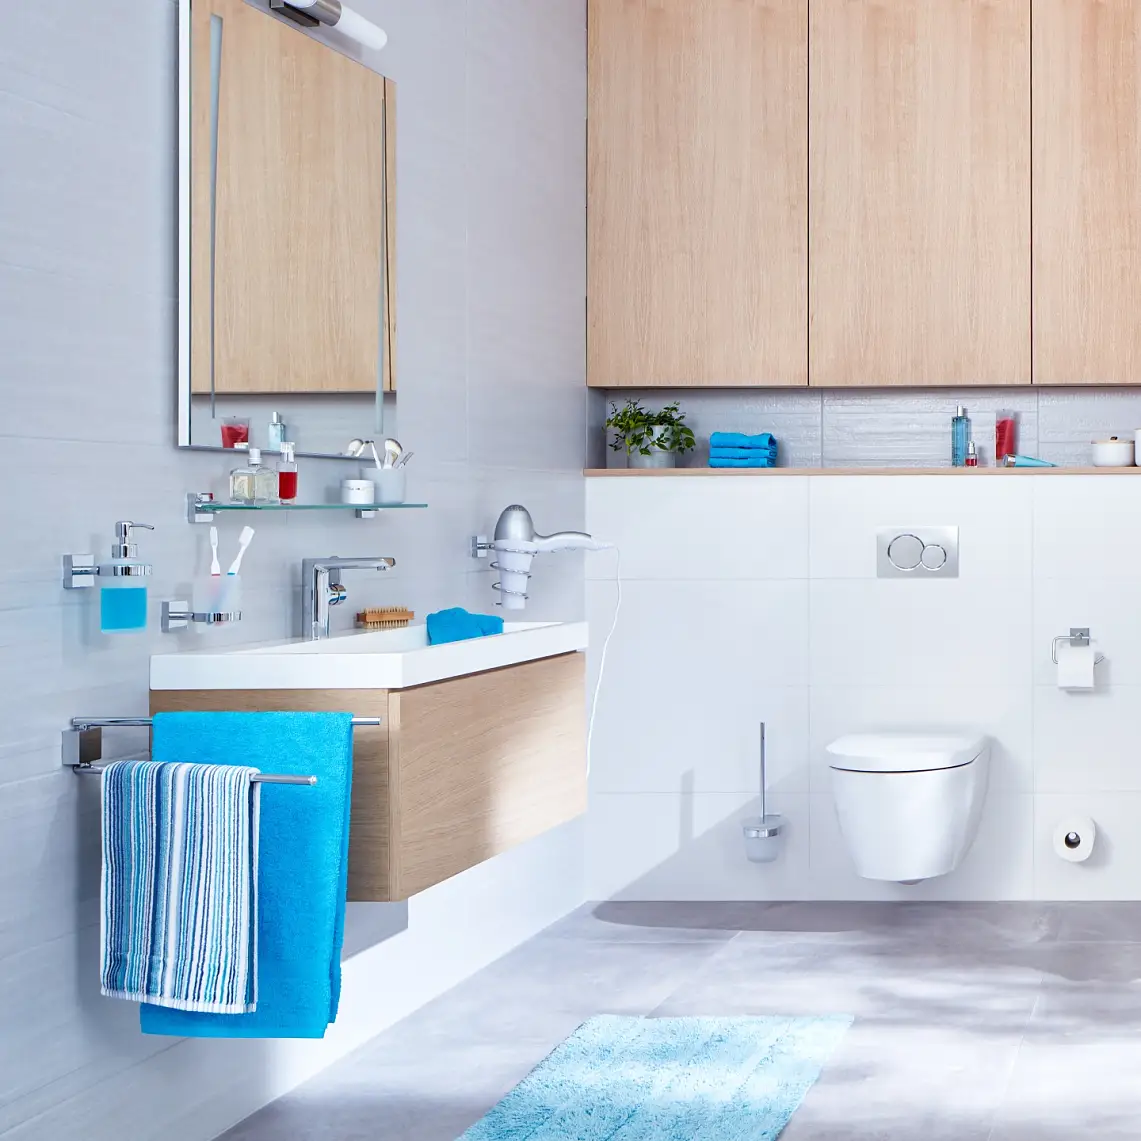 Diseño claro y estructuras rectas para una experiencia de baño organizada.